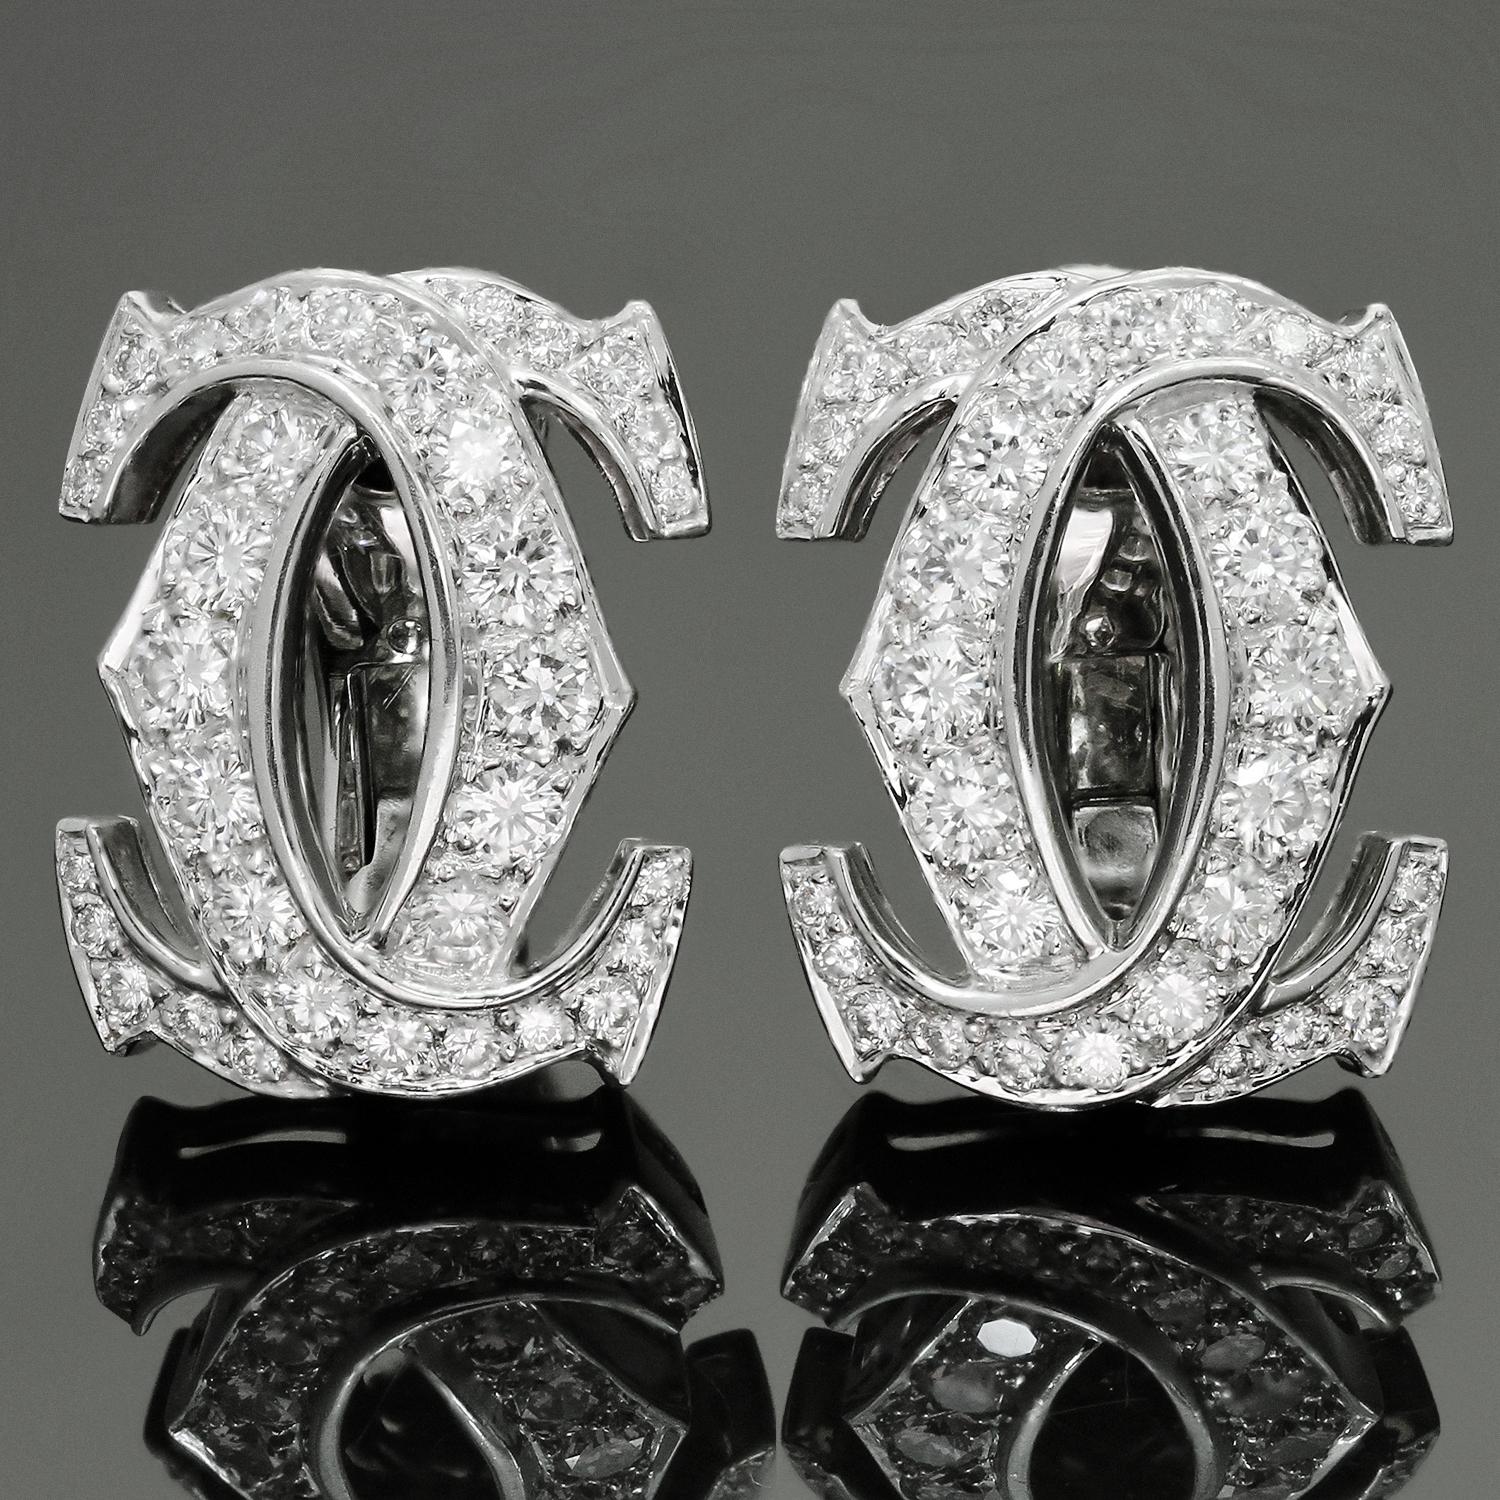 Diese klassischen Cartier-Ohrringe sind aus 18 Karat Weißgold gefertigt und mit runden D-E-F VVS1-VVS2-Diamanten im Brillantschliff besetzt, die auf 2,40 Karat geschätzt werden. Das Erkennungszeichen der Cartier-Welt ist das Doppel-C-Design, ein